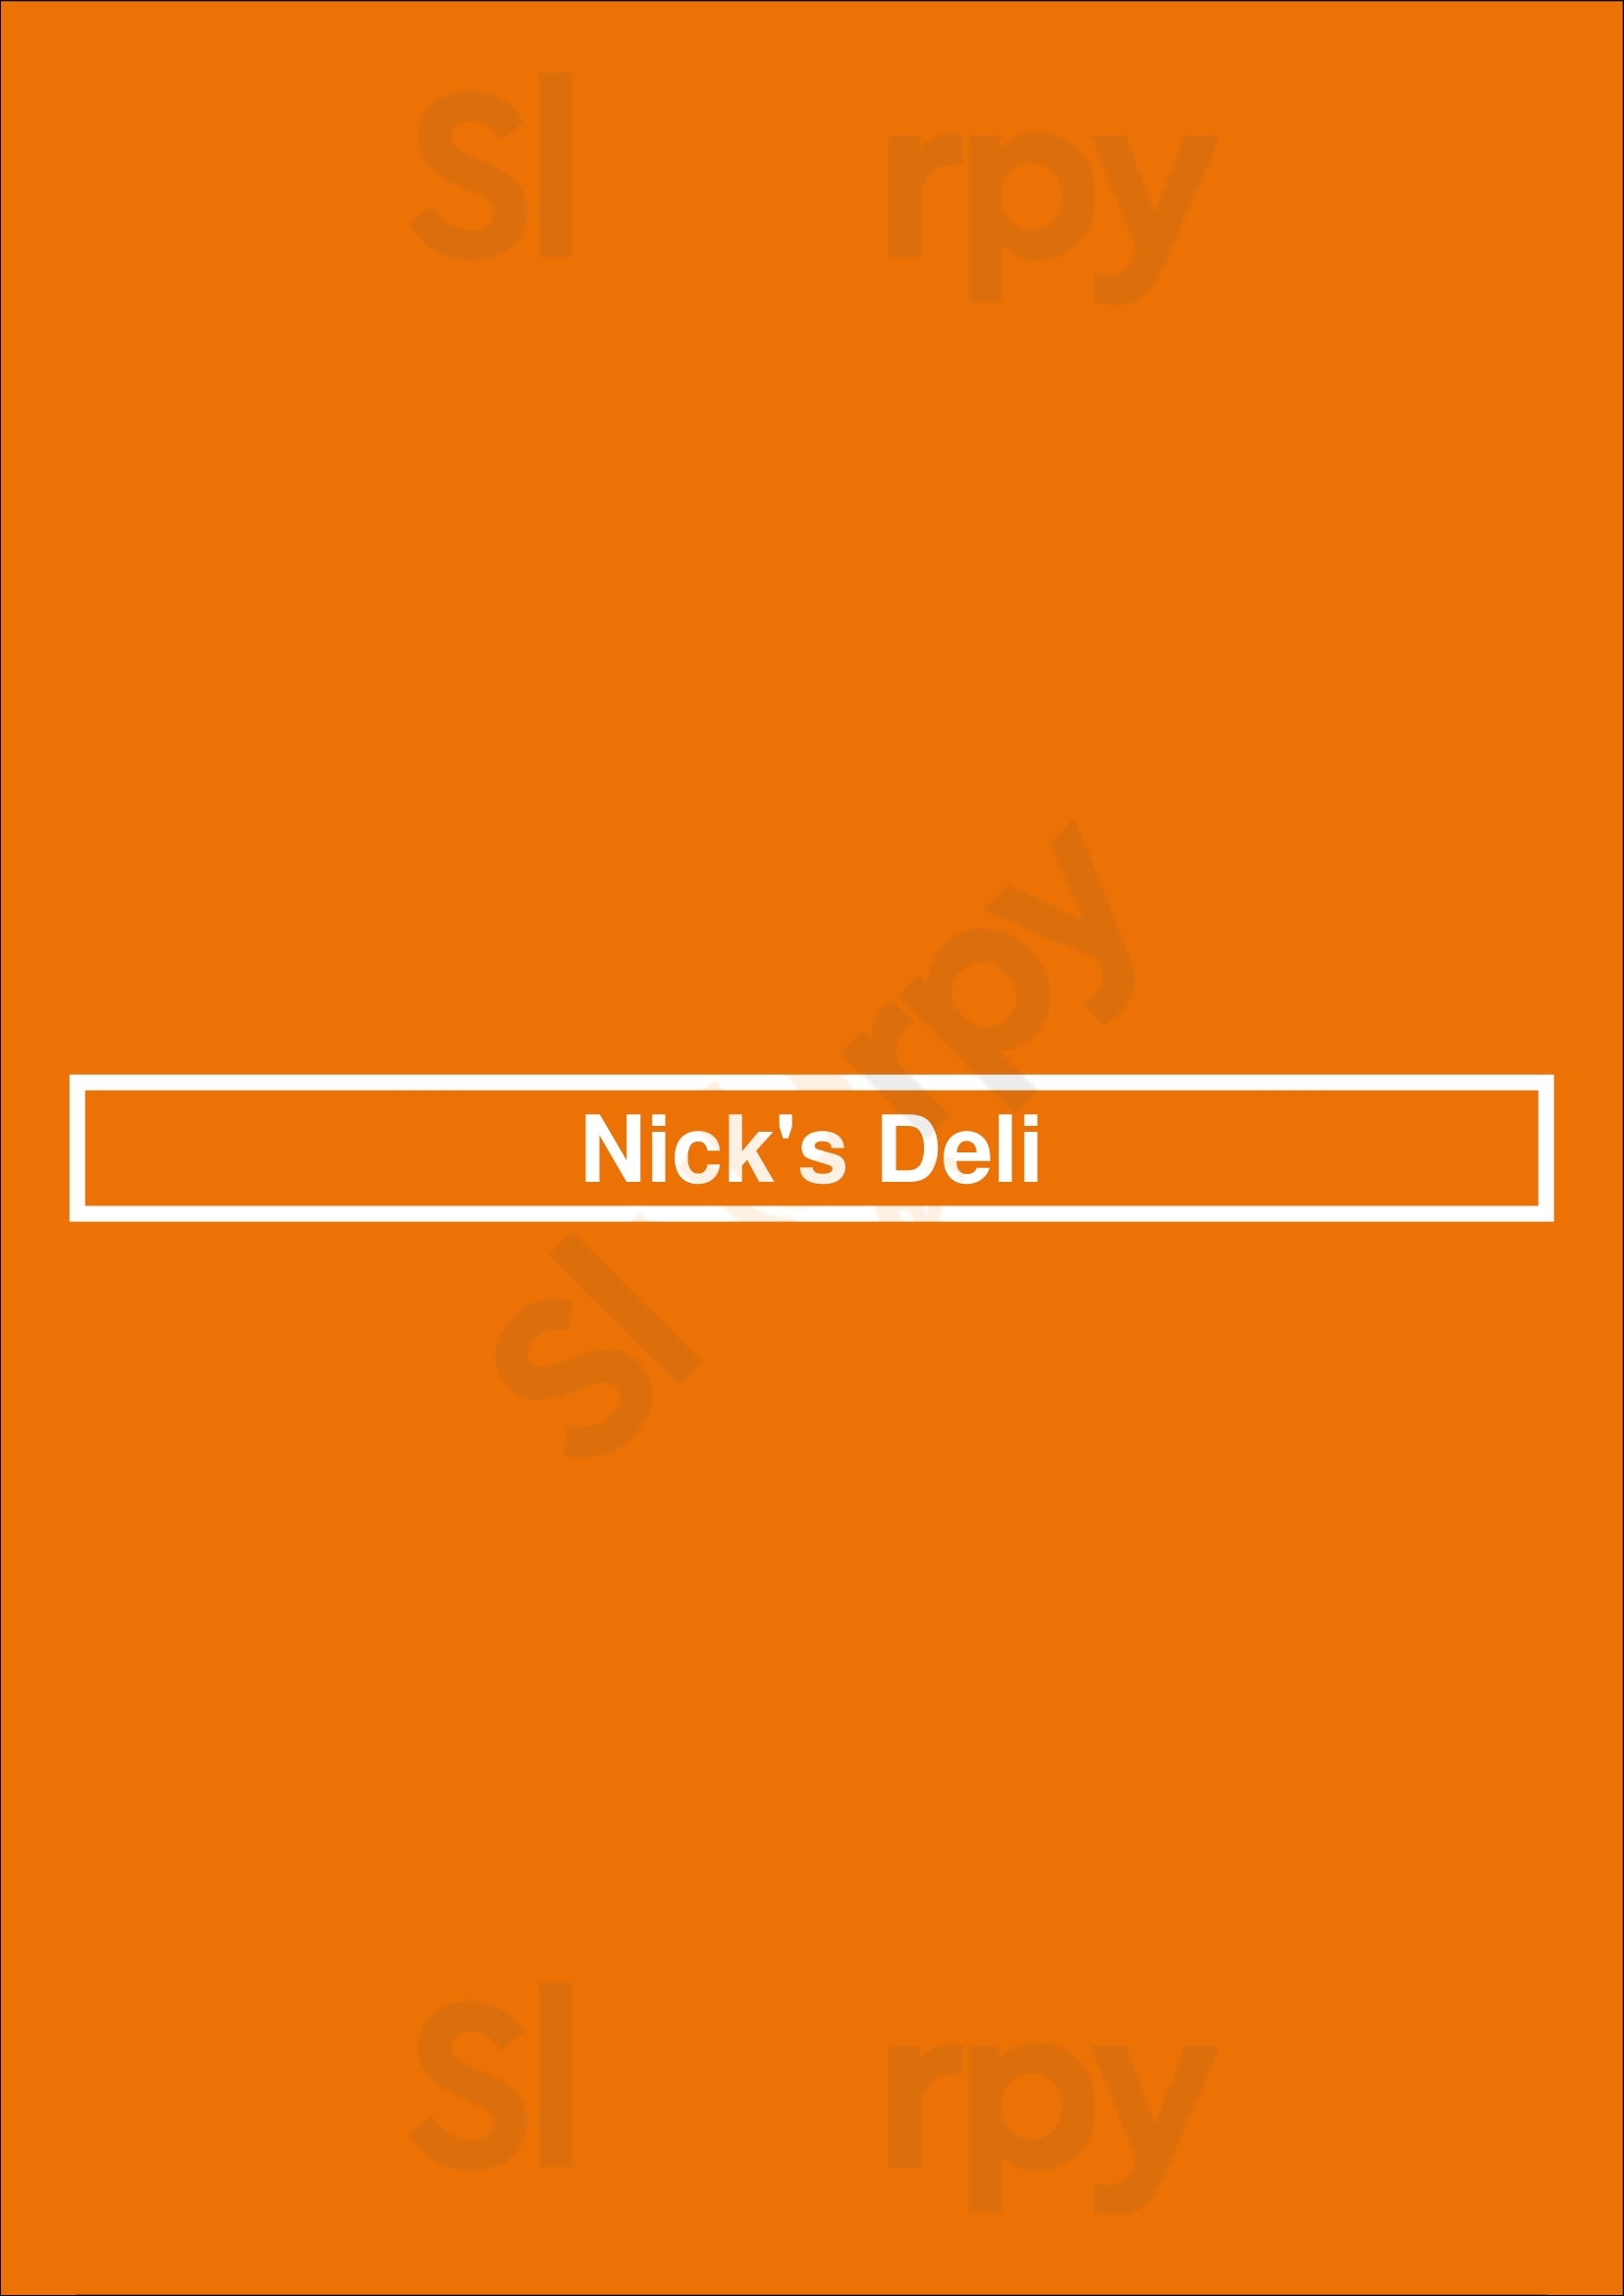 Nick's Deli Rochester Menu - 1